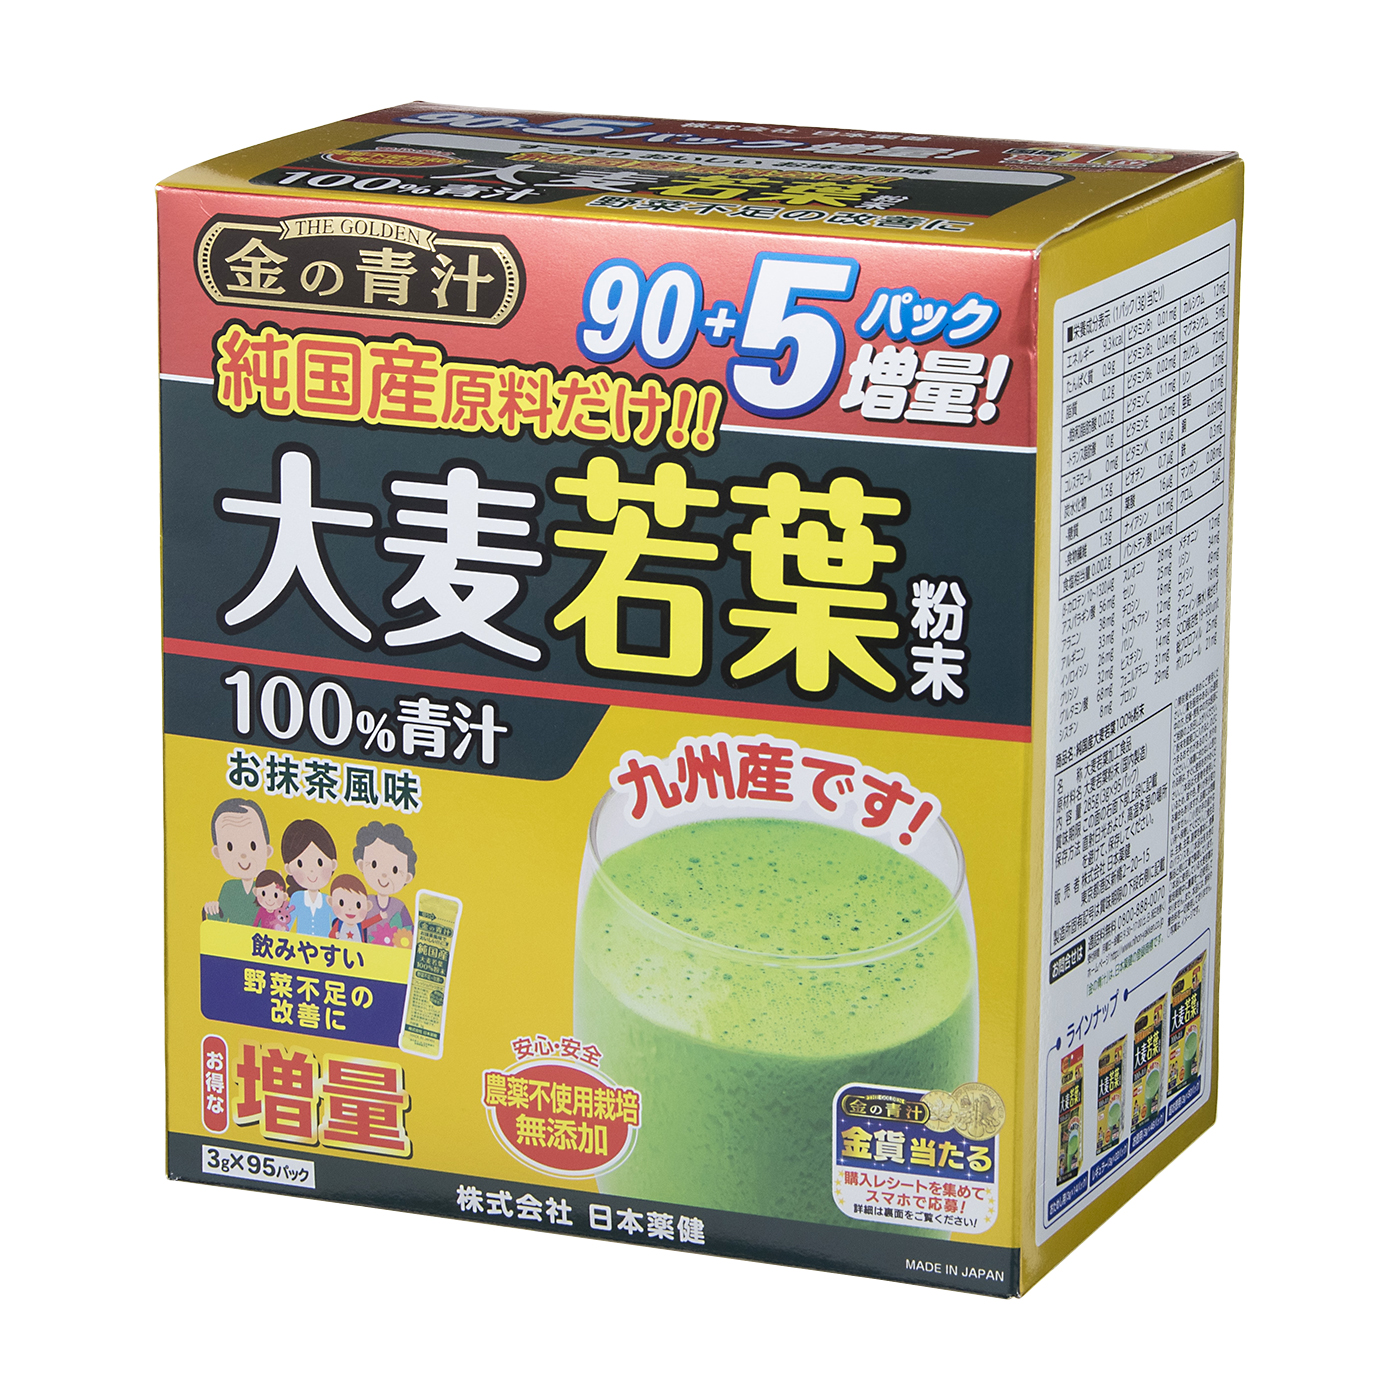 25%OFF銀座まるかんjoka青汁送料無料 賞味期限24年5月 ダイエット食品